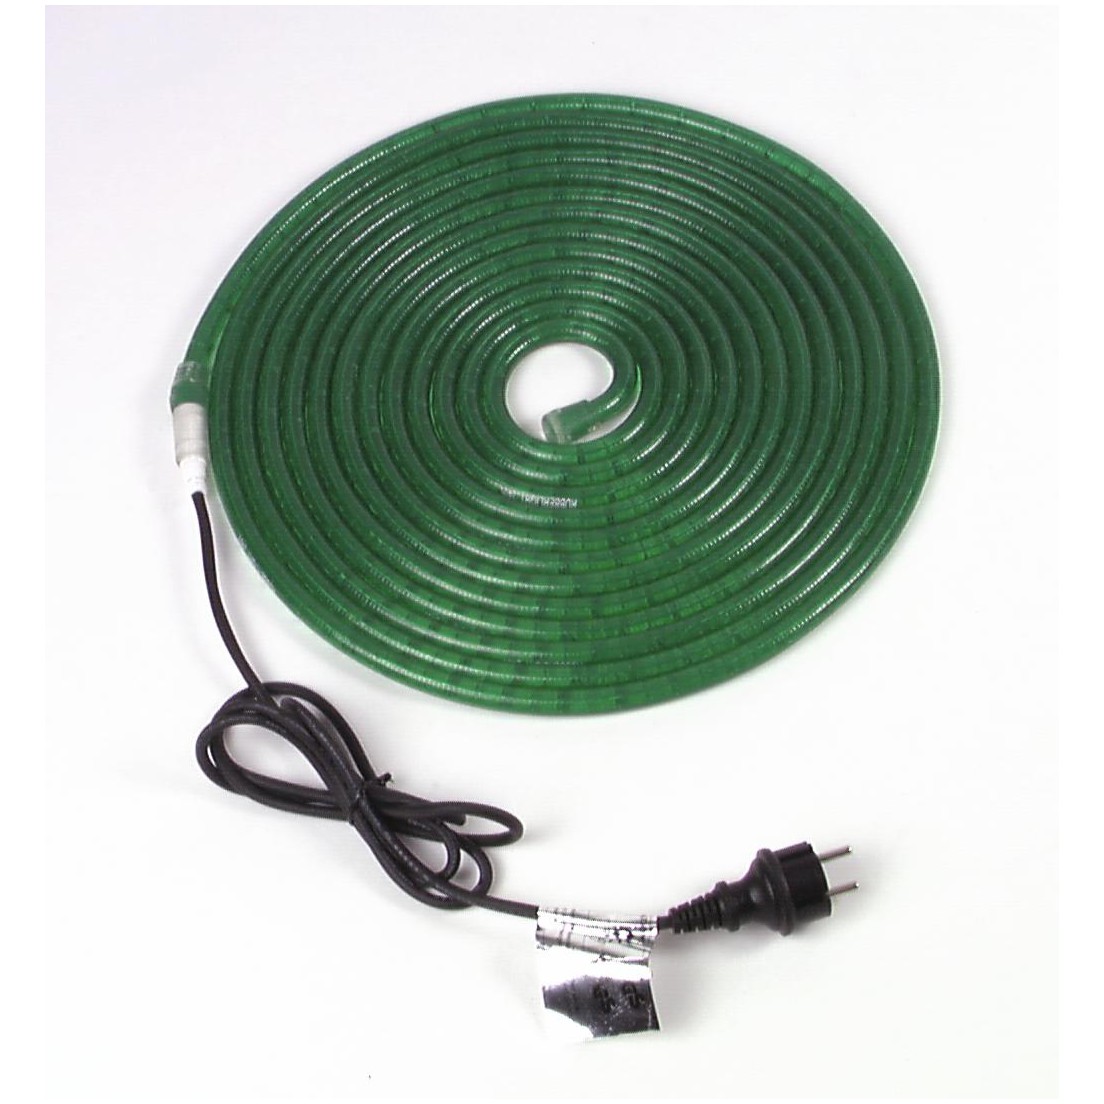 Eurolite rubberlight RL1-230V, zelený, 5m